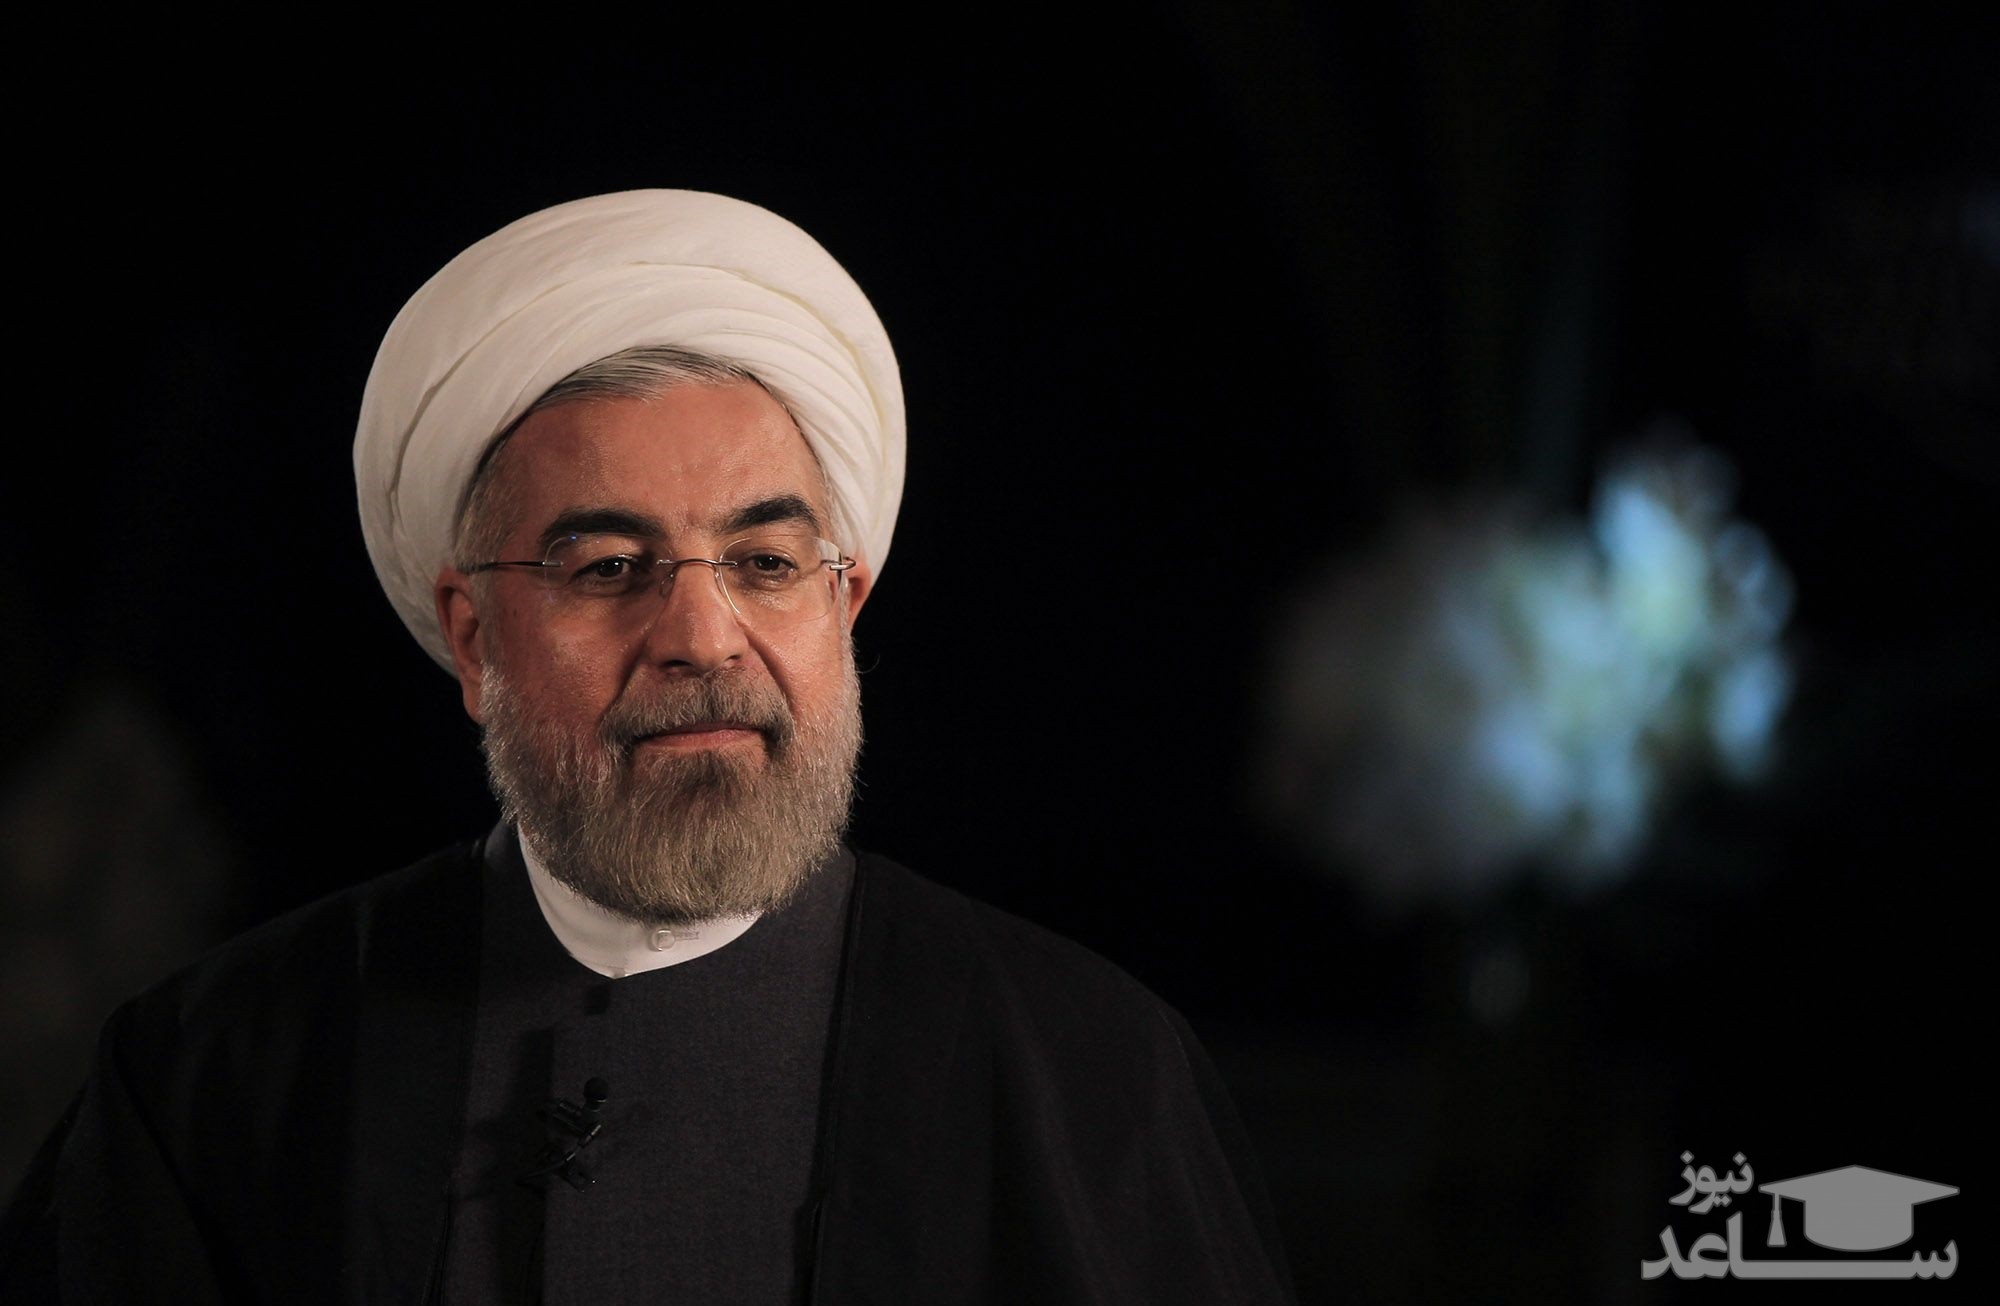 پیام تسلیت رئیس جمهور در پی غرق شدن نفت کش ایرانی